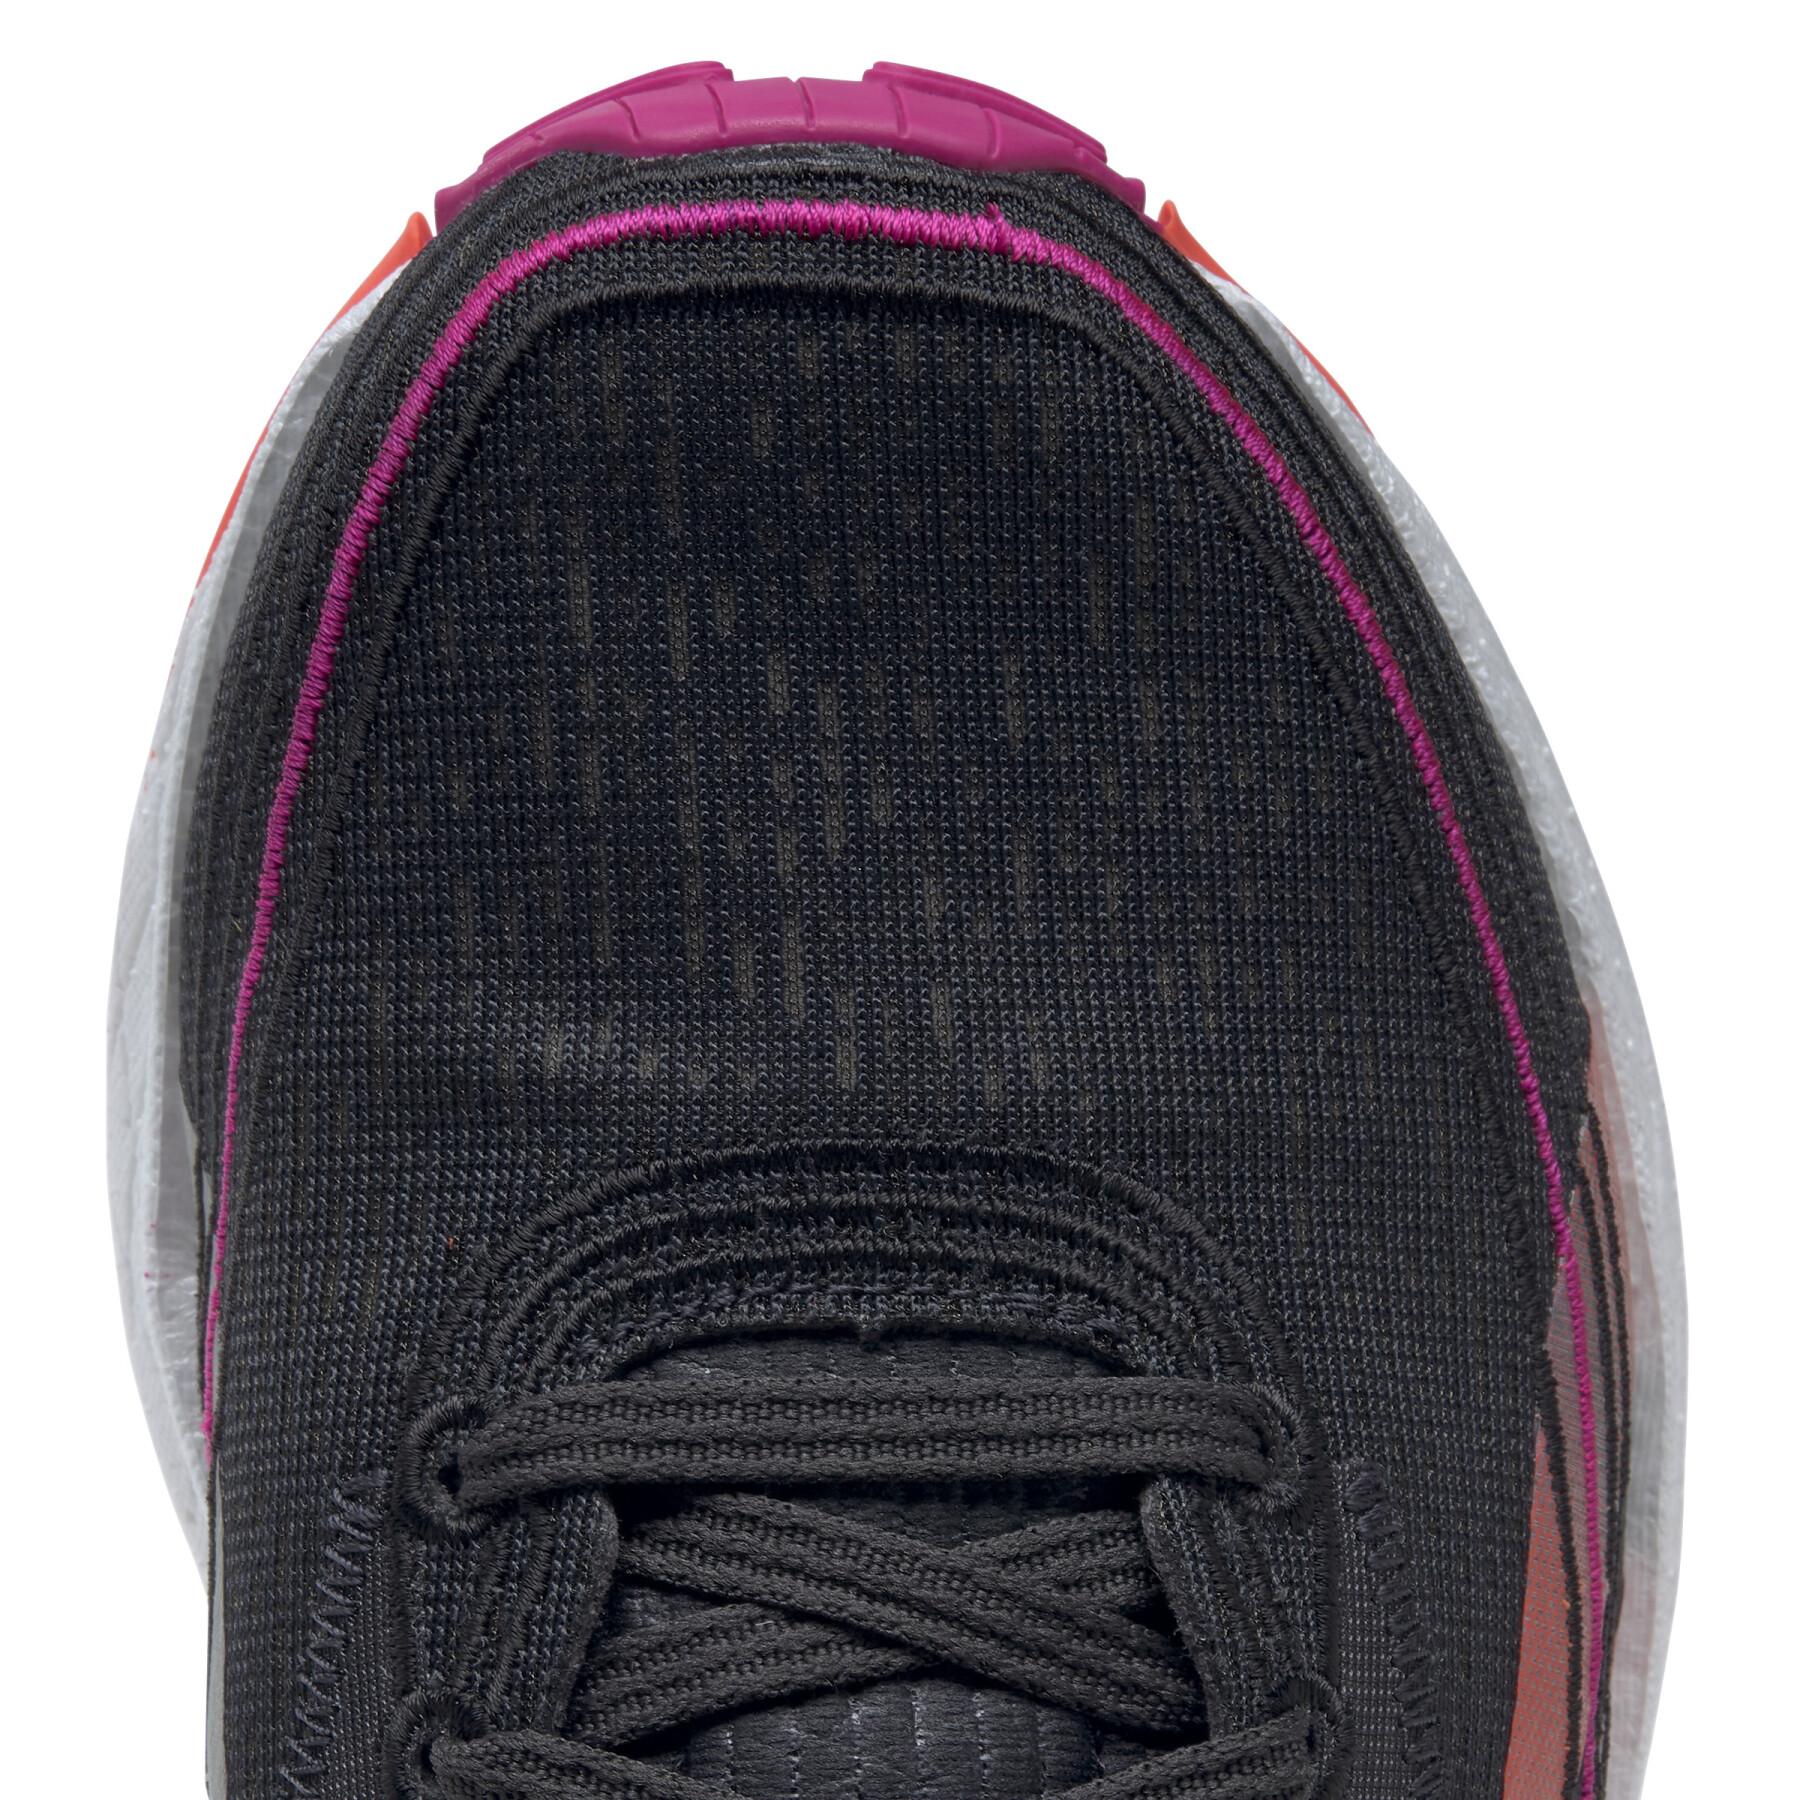 Chaussures de running femme Reebok Floatride Energy 4